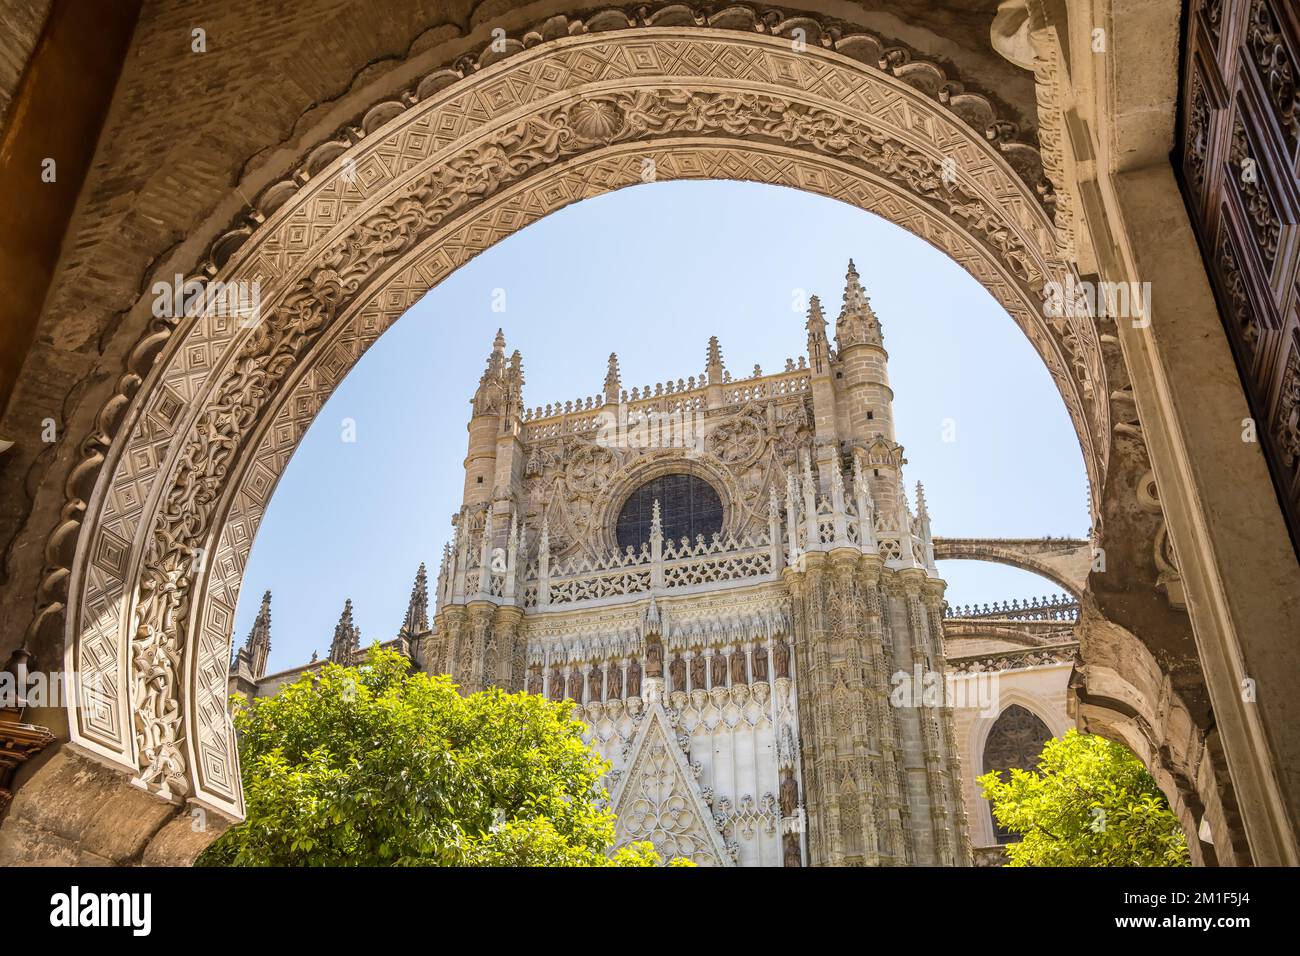 Cathédrale de Séville vue à travers la belle arche sculptée à Séville, Espagne Banque D'Images